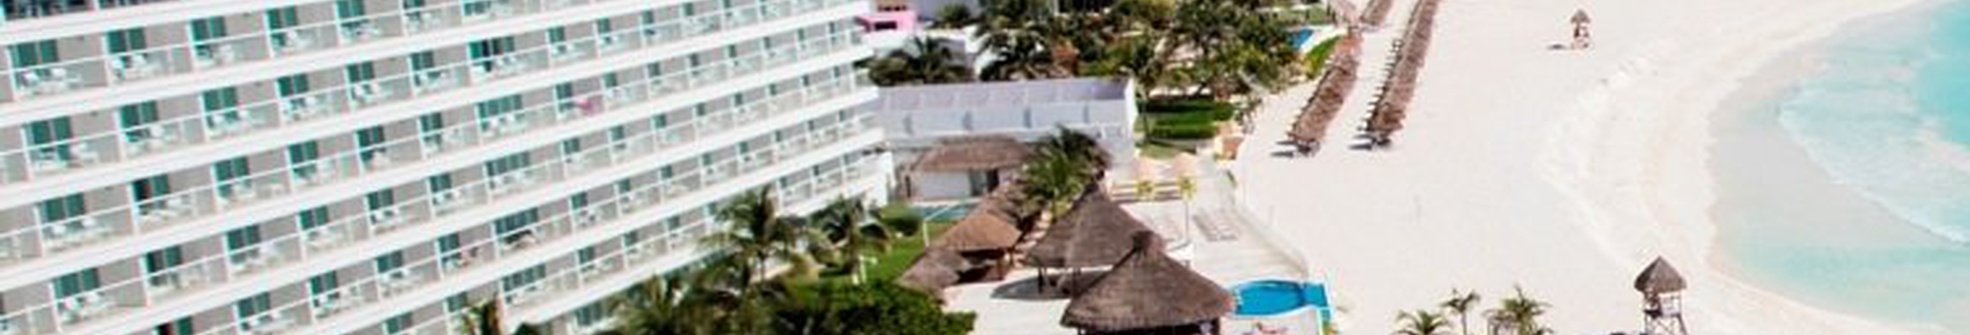 Krystal Cancún Hotel Krystal Cancún Hotel - 